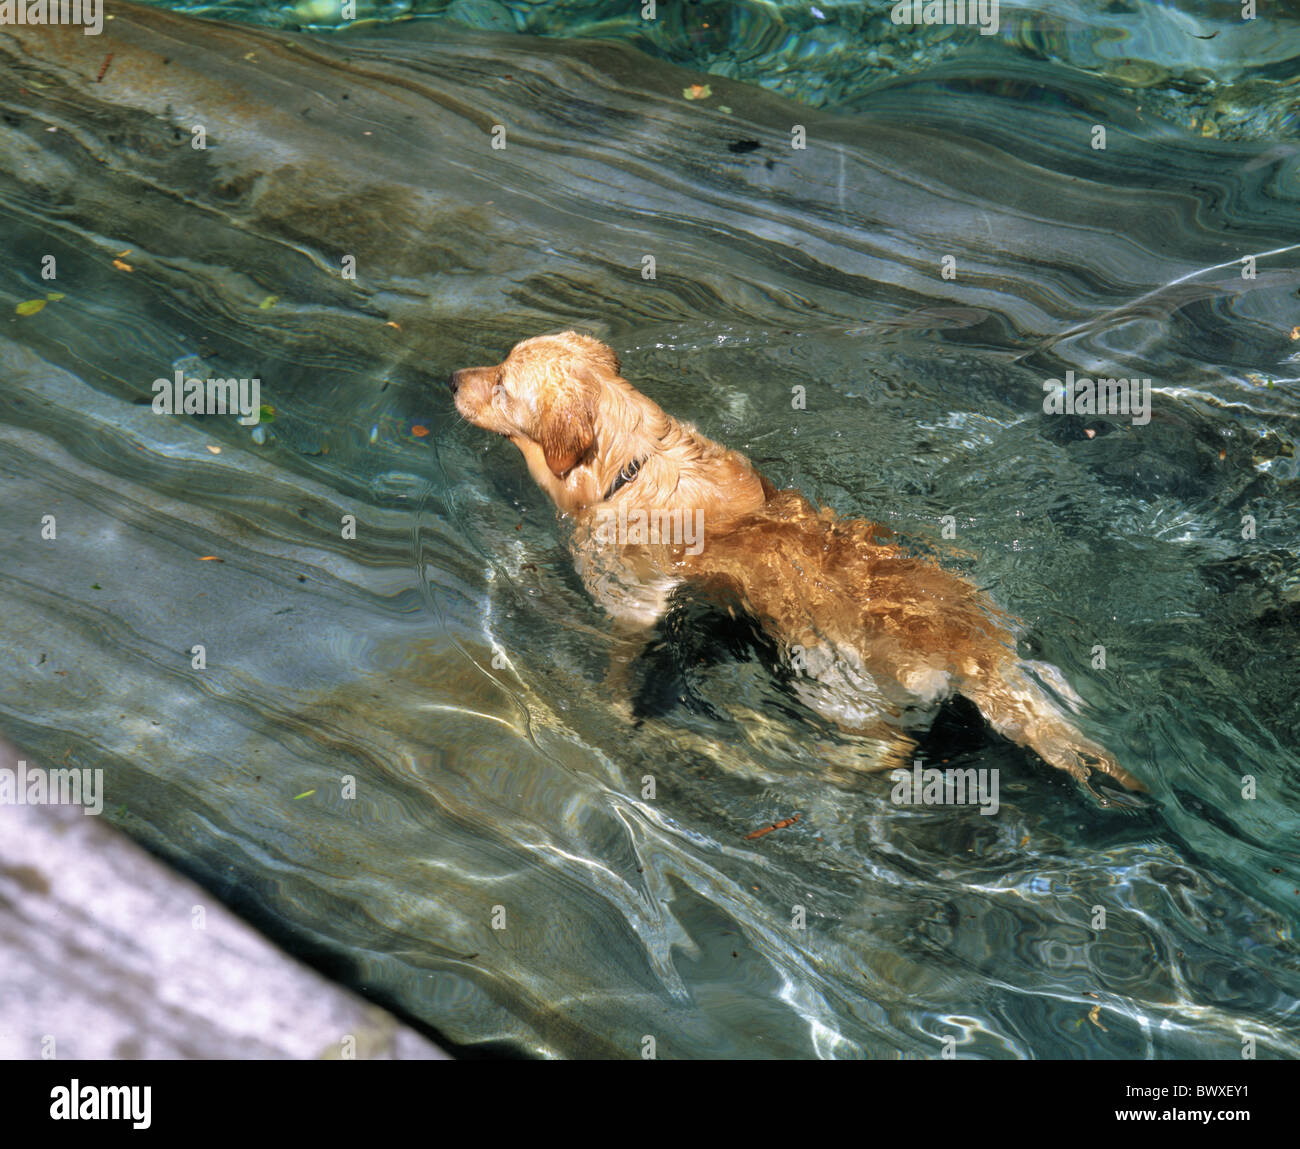 Fluss Fluss Golden Retriever Hund außereuropäischen klar Schweiz Tessin  Verzasca schwimmen Stockfotografie - Alamy